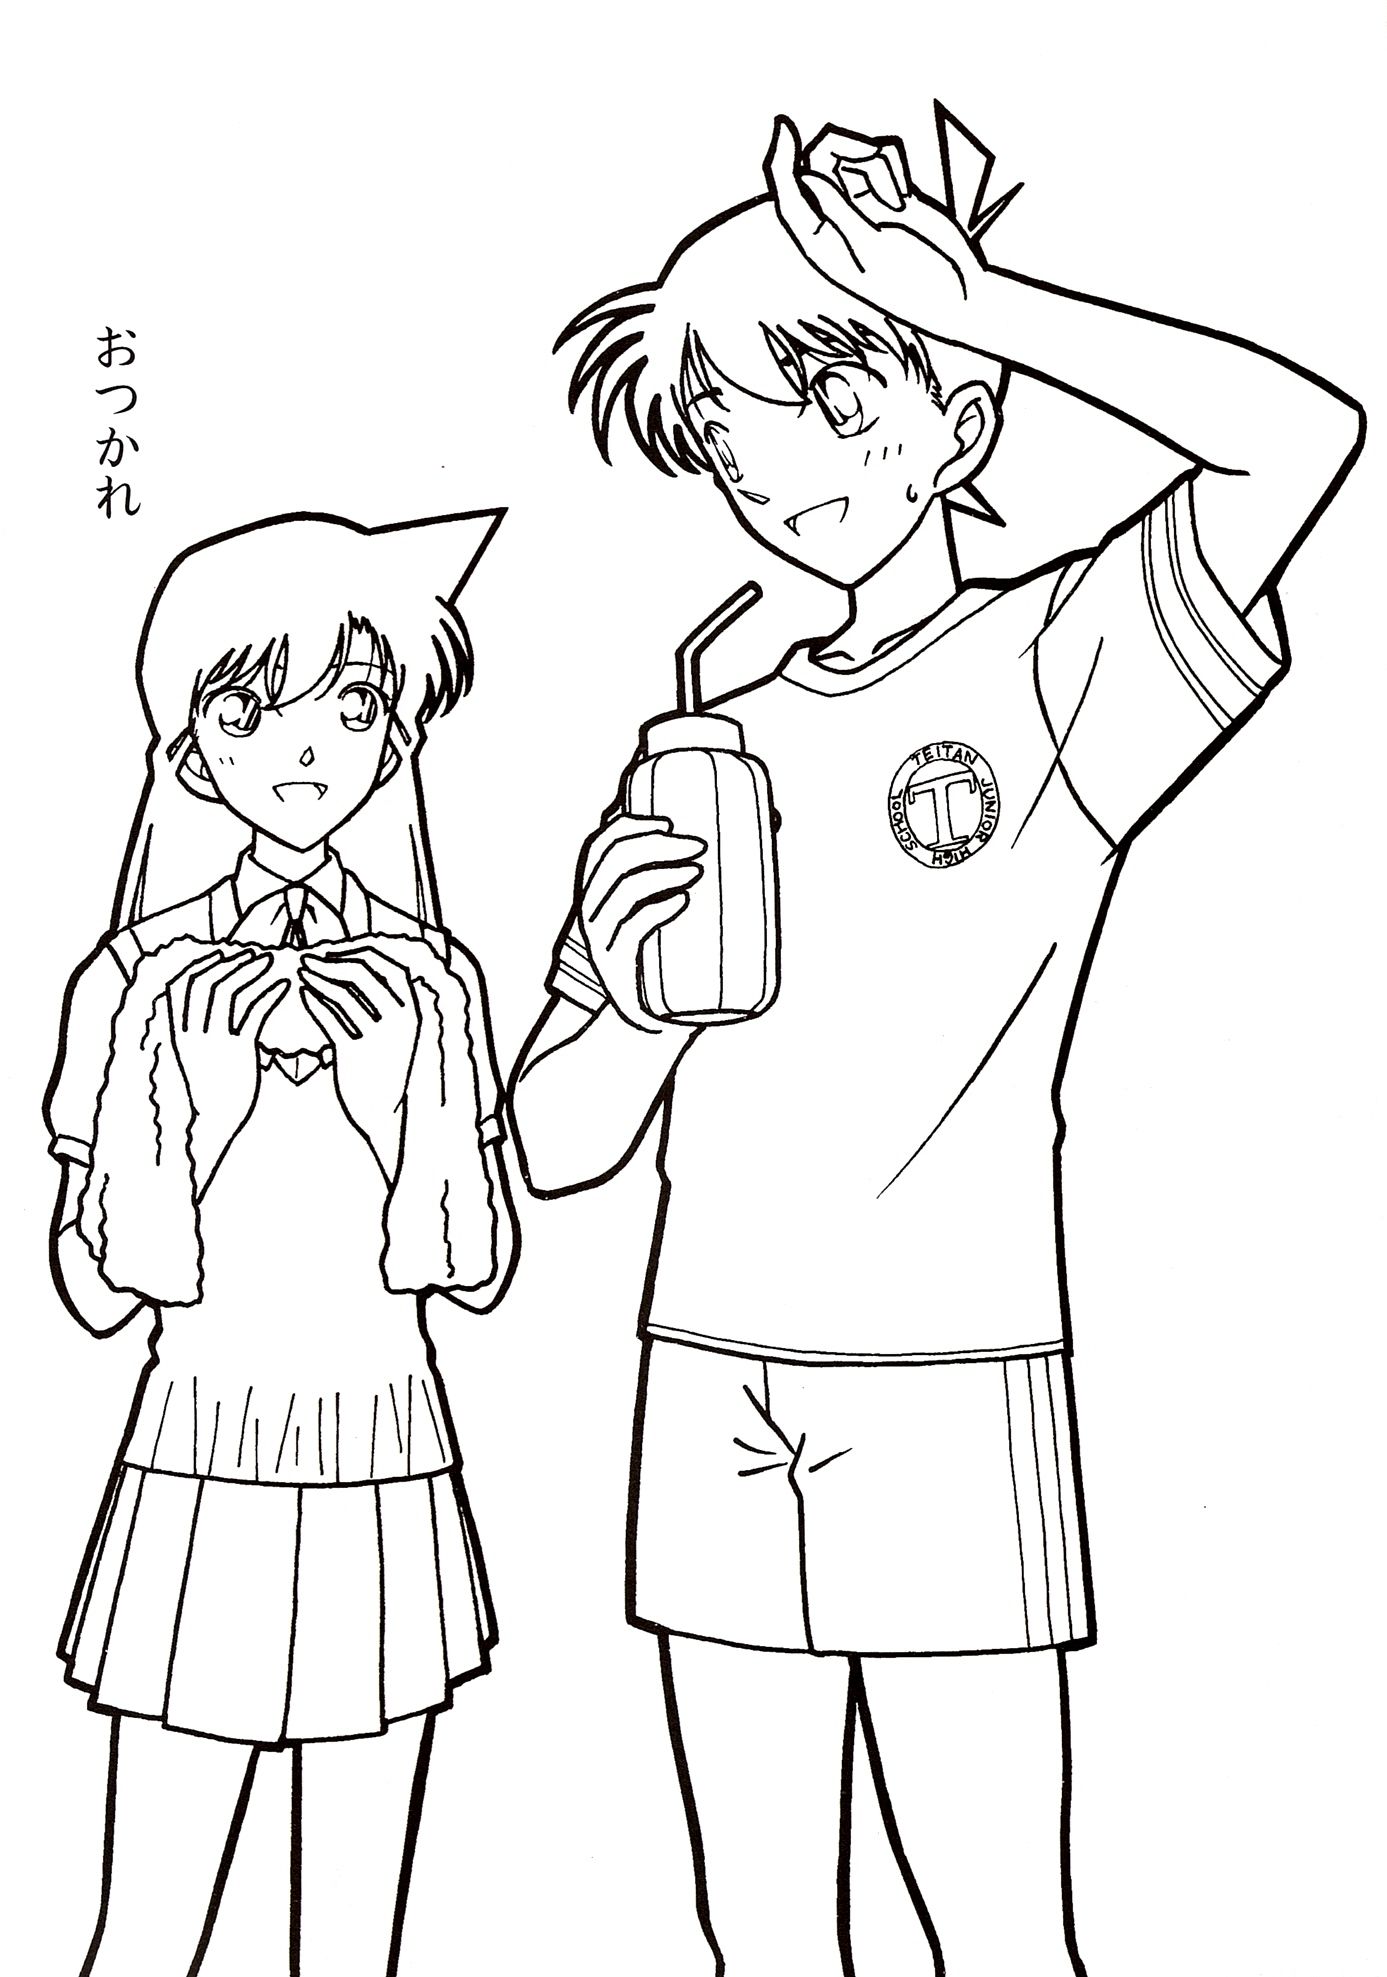 Tranh tô màu anime Shinichi và Ran